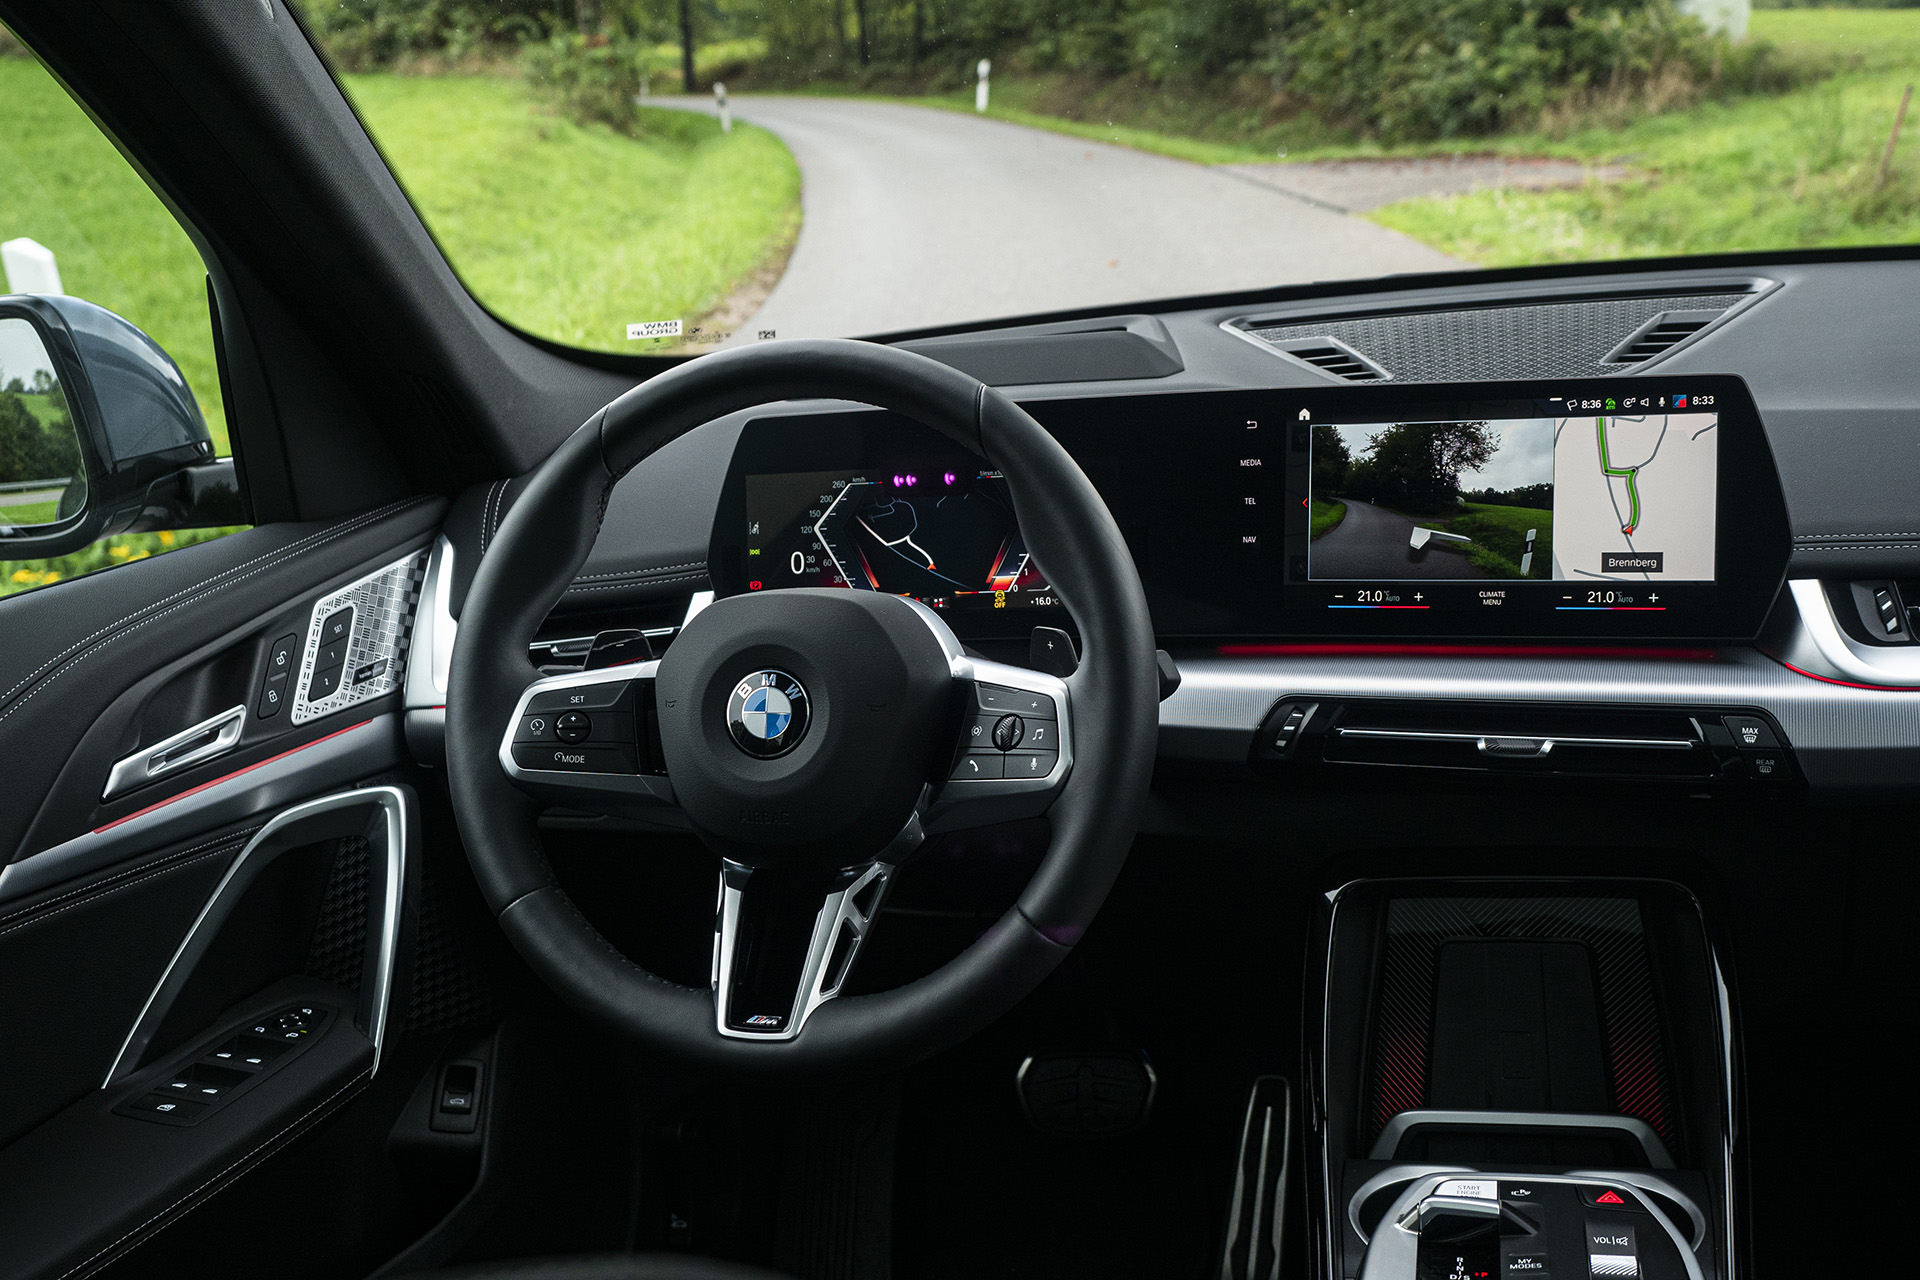 Prvá jazda: Nové BMW X1 je tak veľké ako X3 kedysi